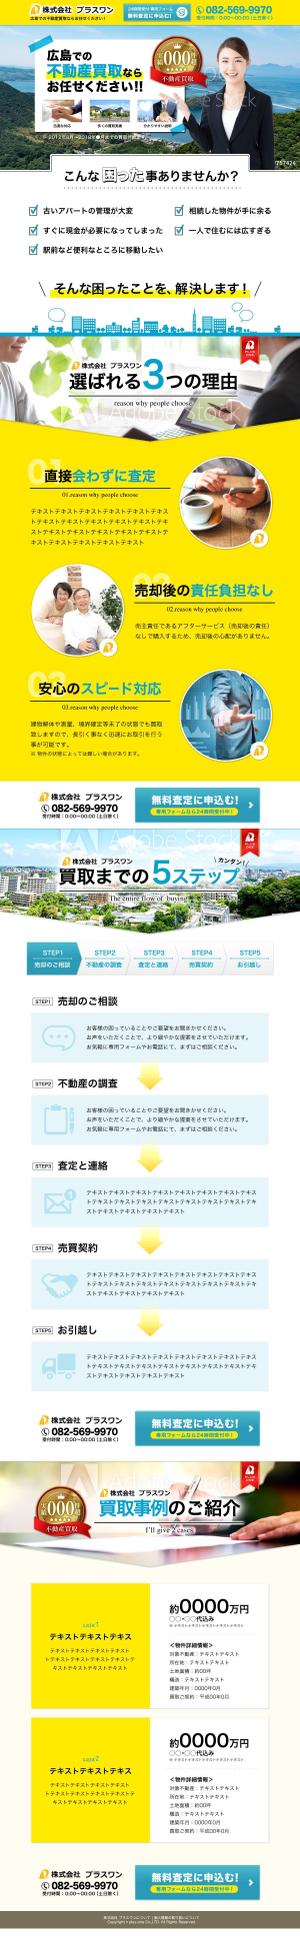 Joker Design (a_uchida)さんの広島での不動産の買取査定を広く募集するランディングページへの提案